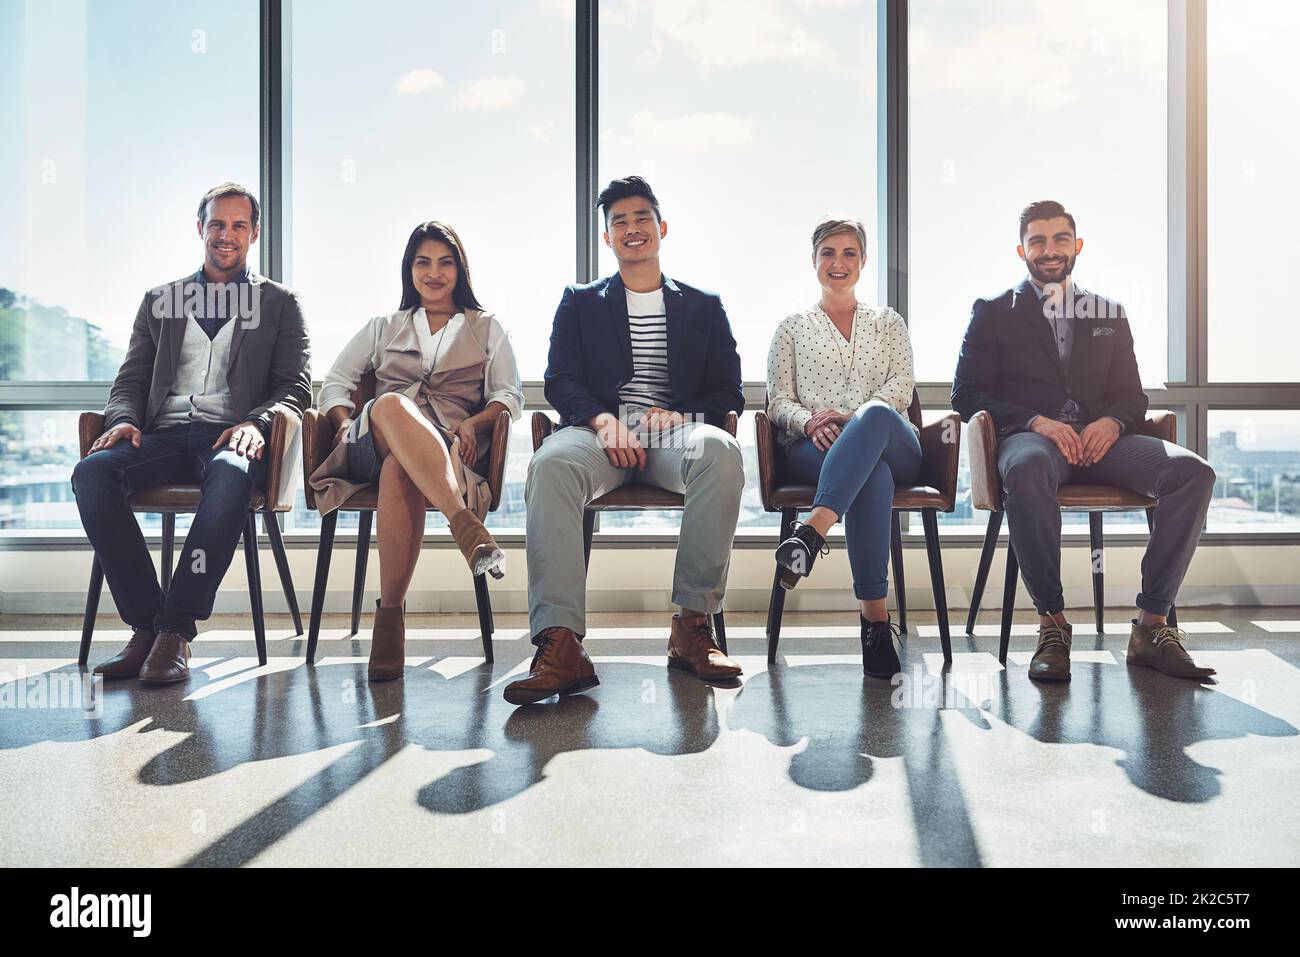 Asseyez-vous et regardez-nous faire réussir. Portrait d'un groupe d'hommes d'affaires assis en ligne dans un bureau. Banque D'Images